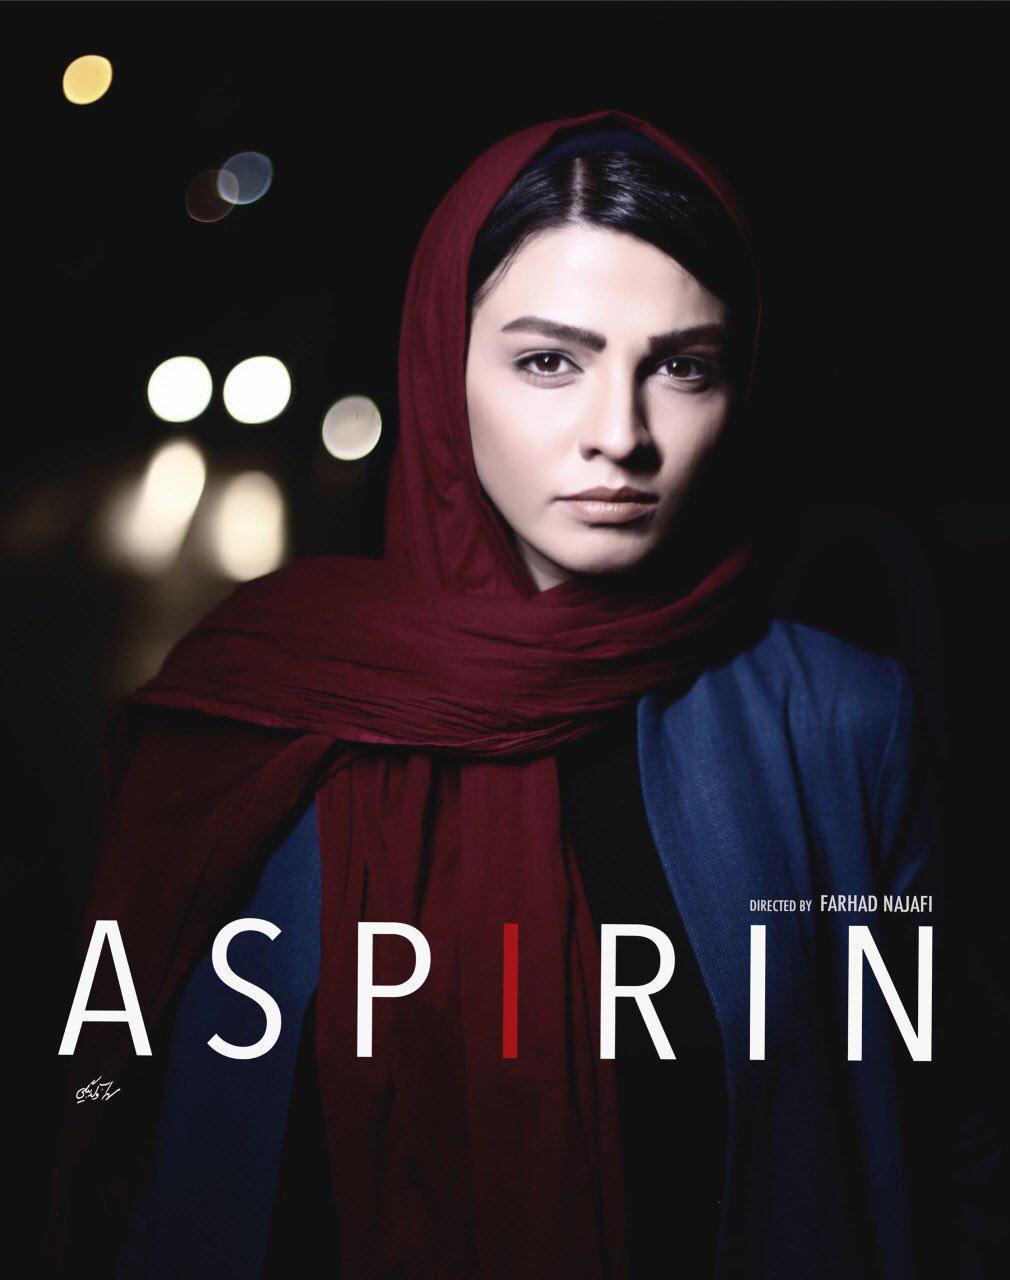 سیما خضرآبادی در پوستر سریال شبکه نمایش خانگی آسپرین